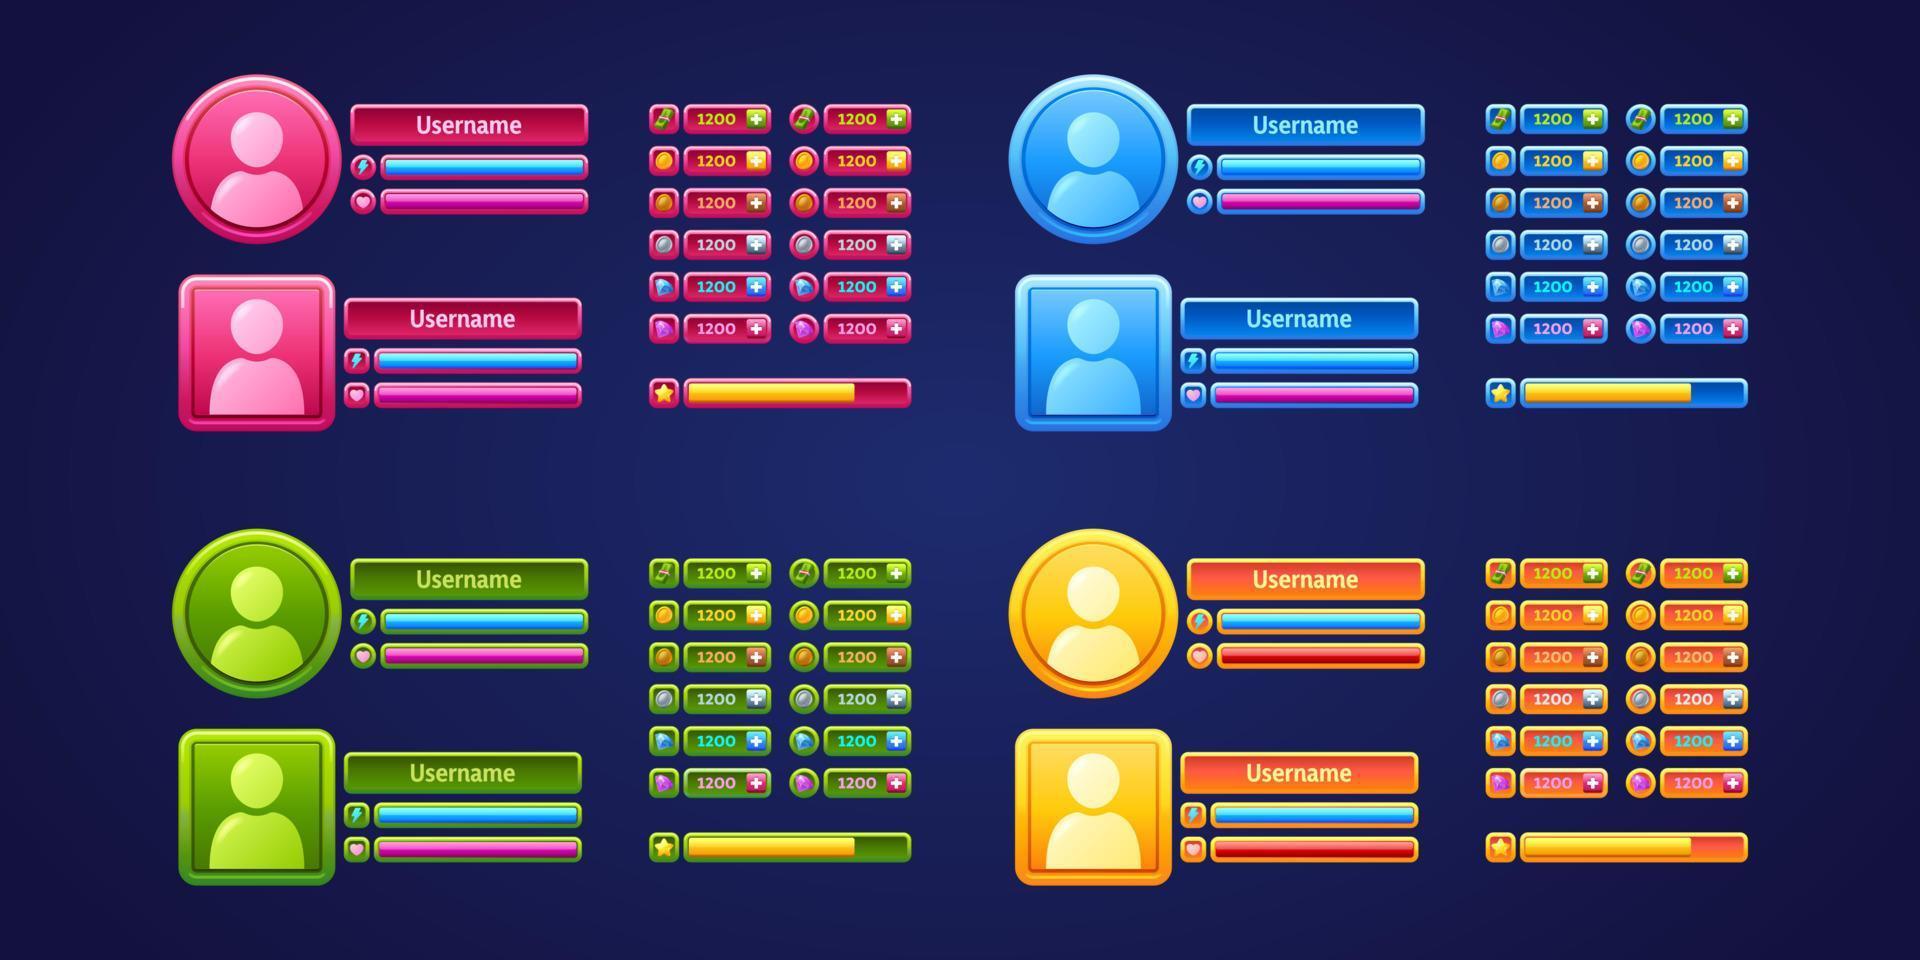 paneles de menú de usuario del juego, conjunto de perfiles de jugador rpg vector